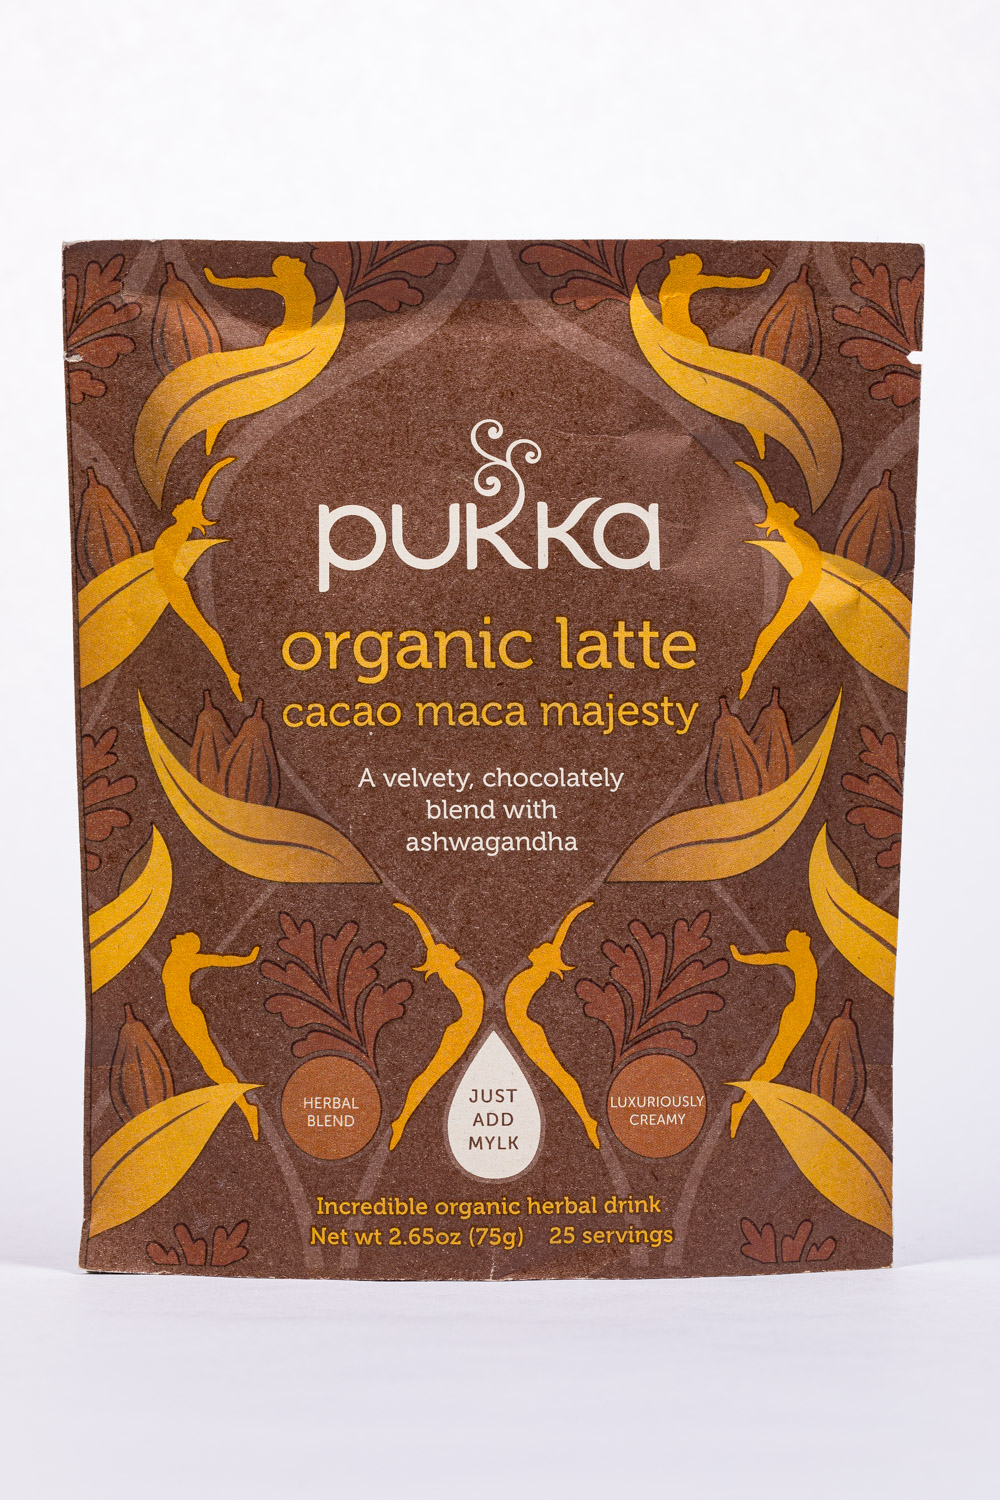 Cacao Maca Majesty